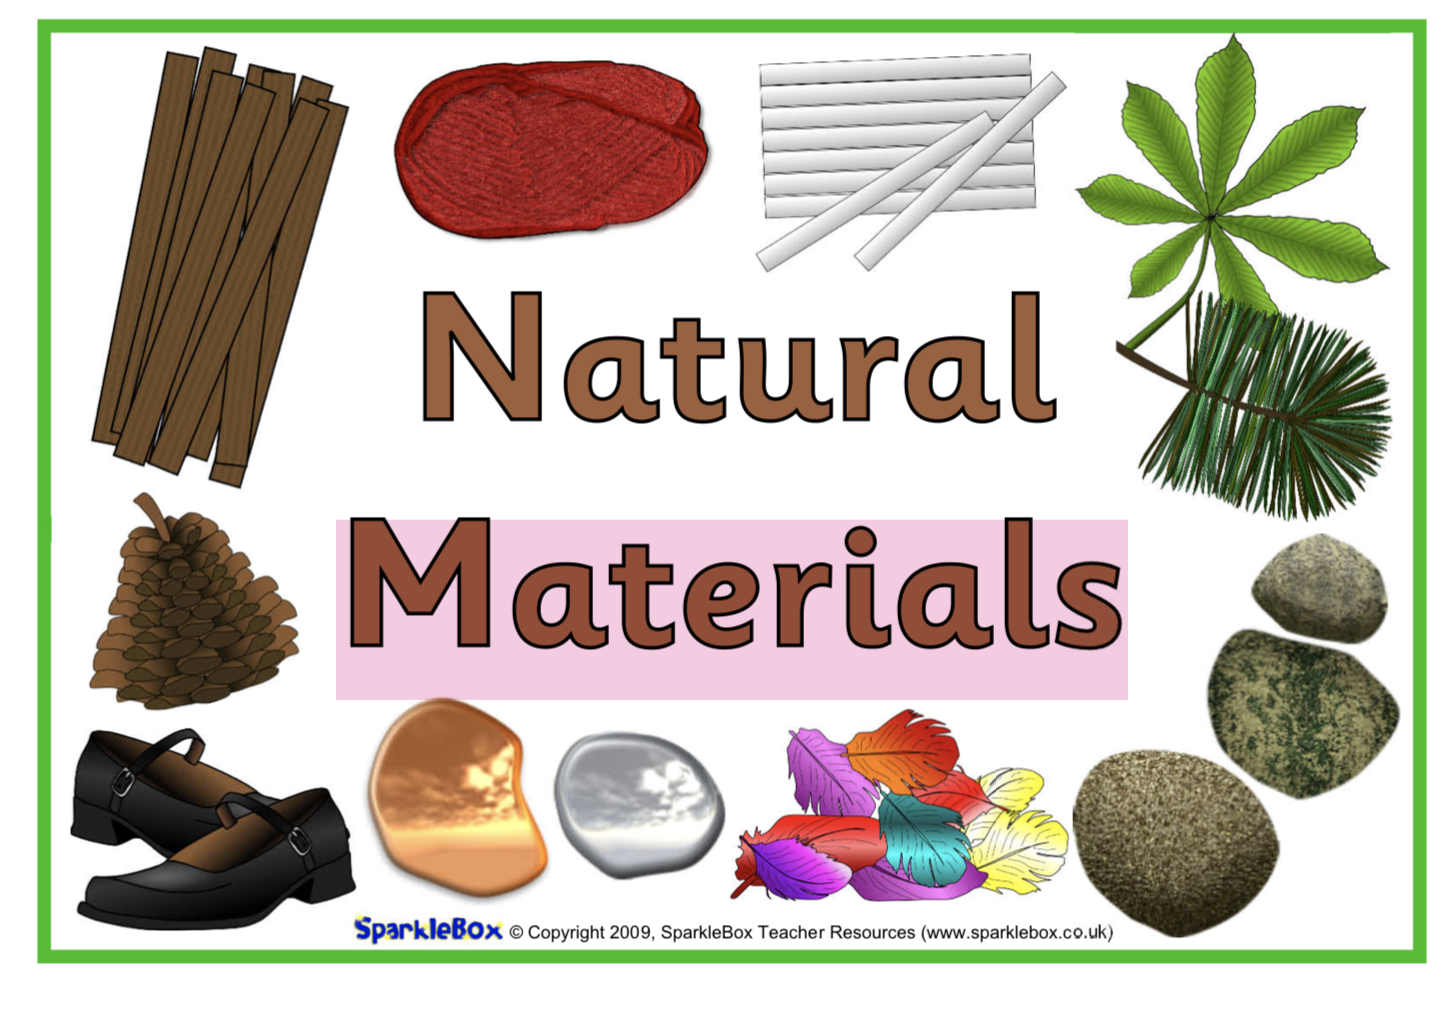 Materials are. Natural materials. Natural materials man made. Material things. Material nature.